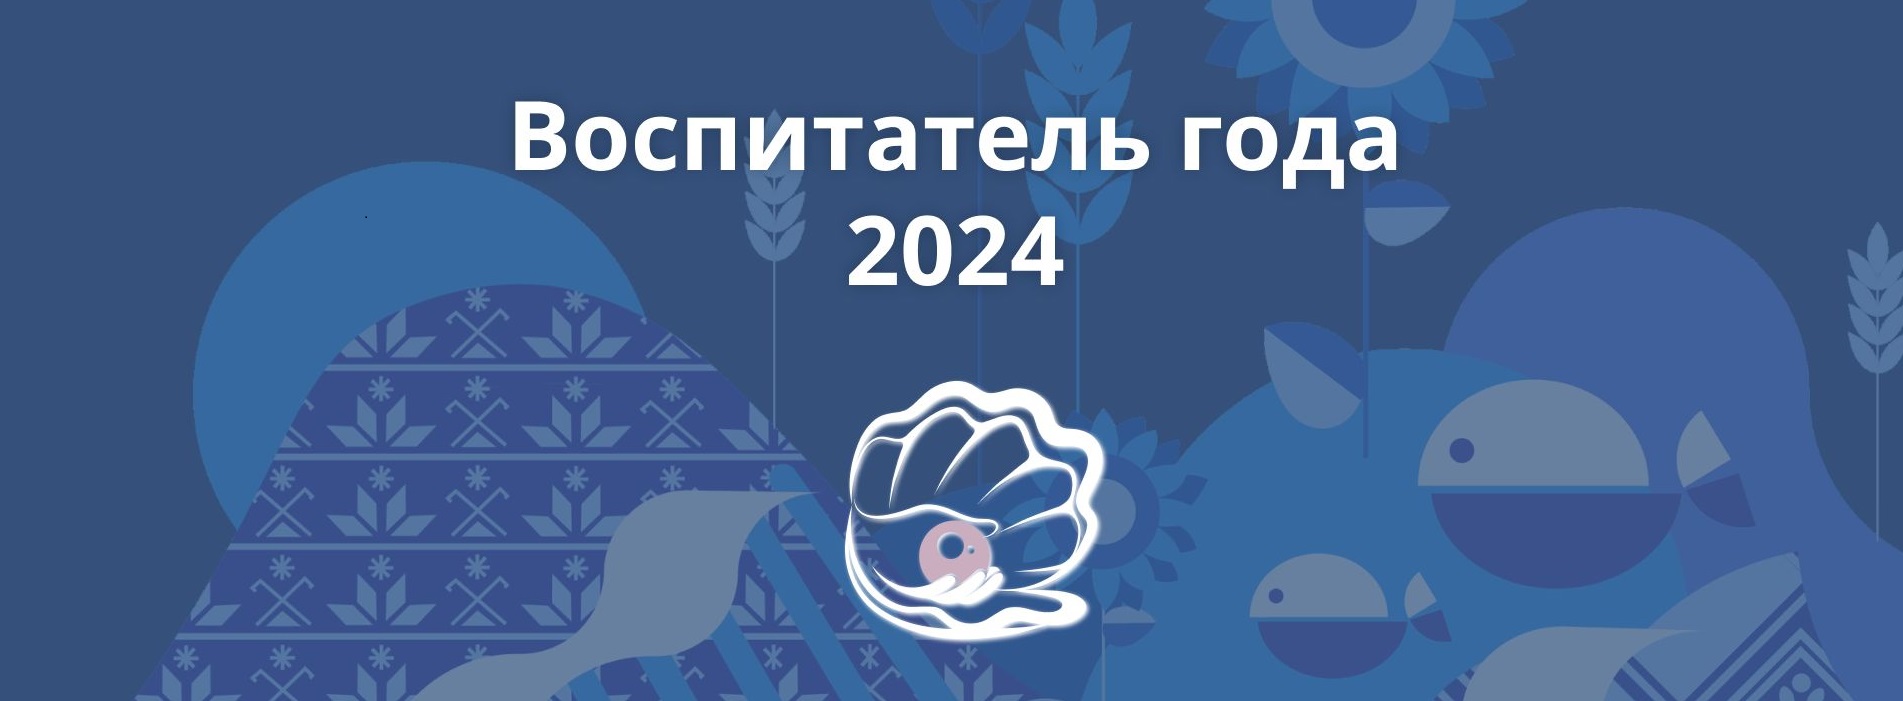 Районный конкурс профессионального мастерства  «Воспитатель года - 2024».